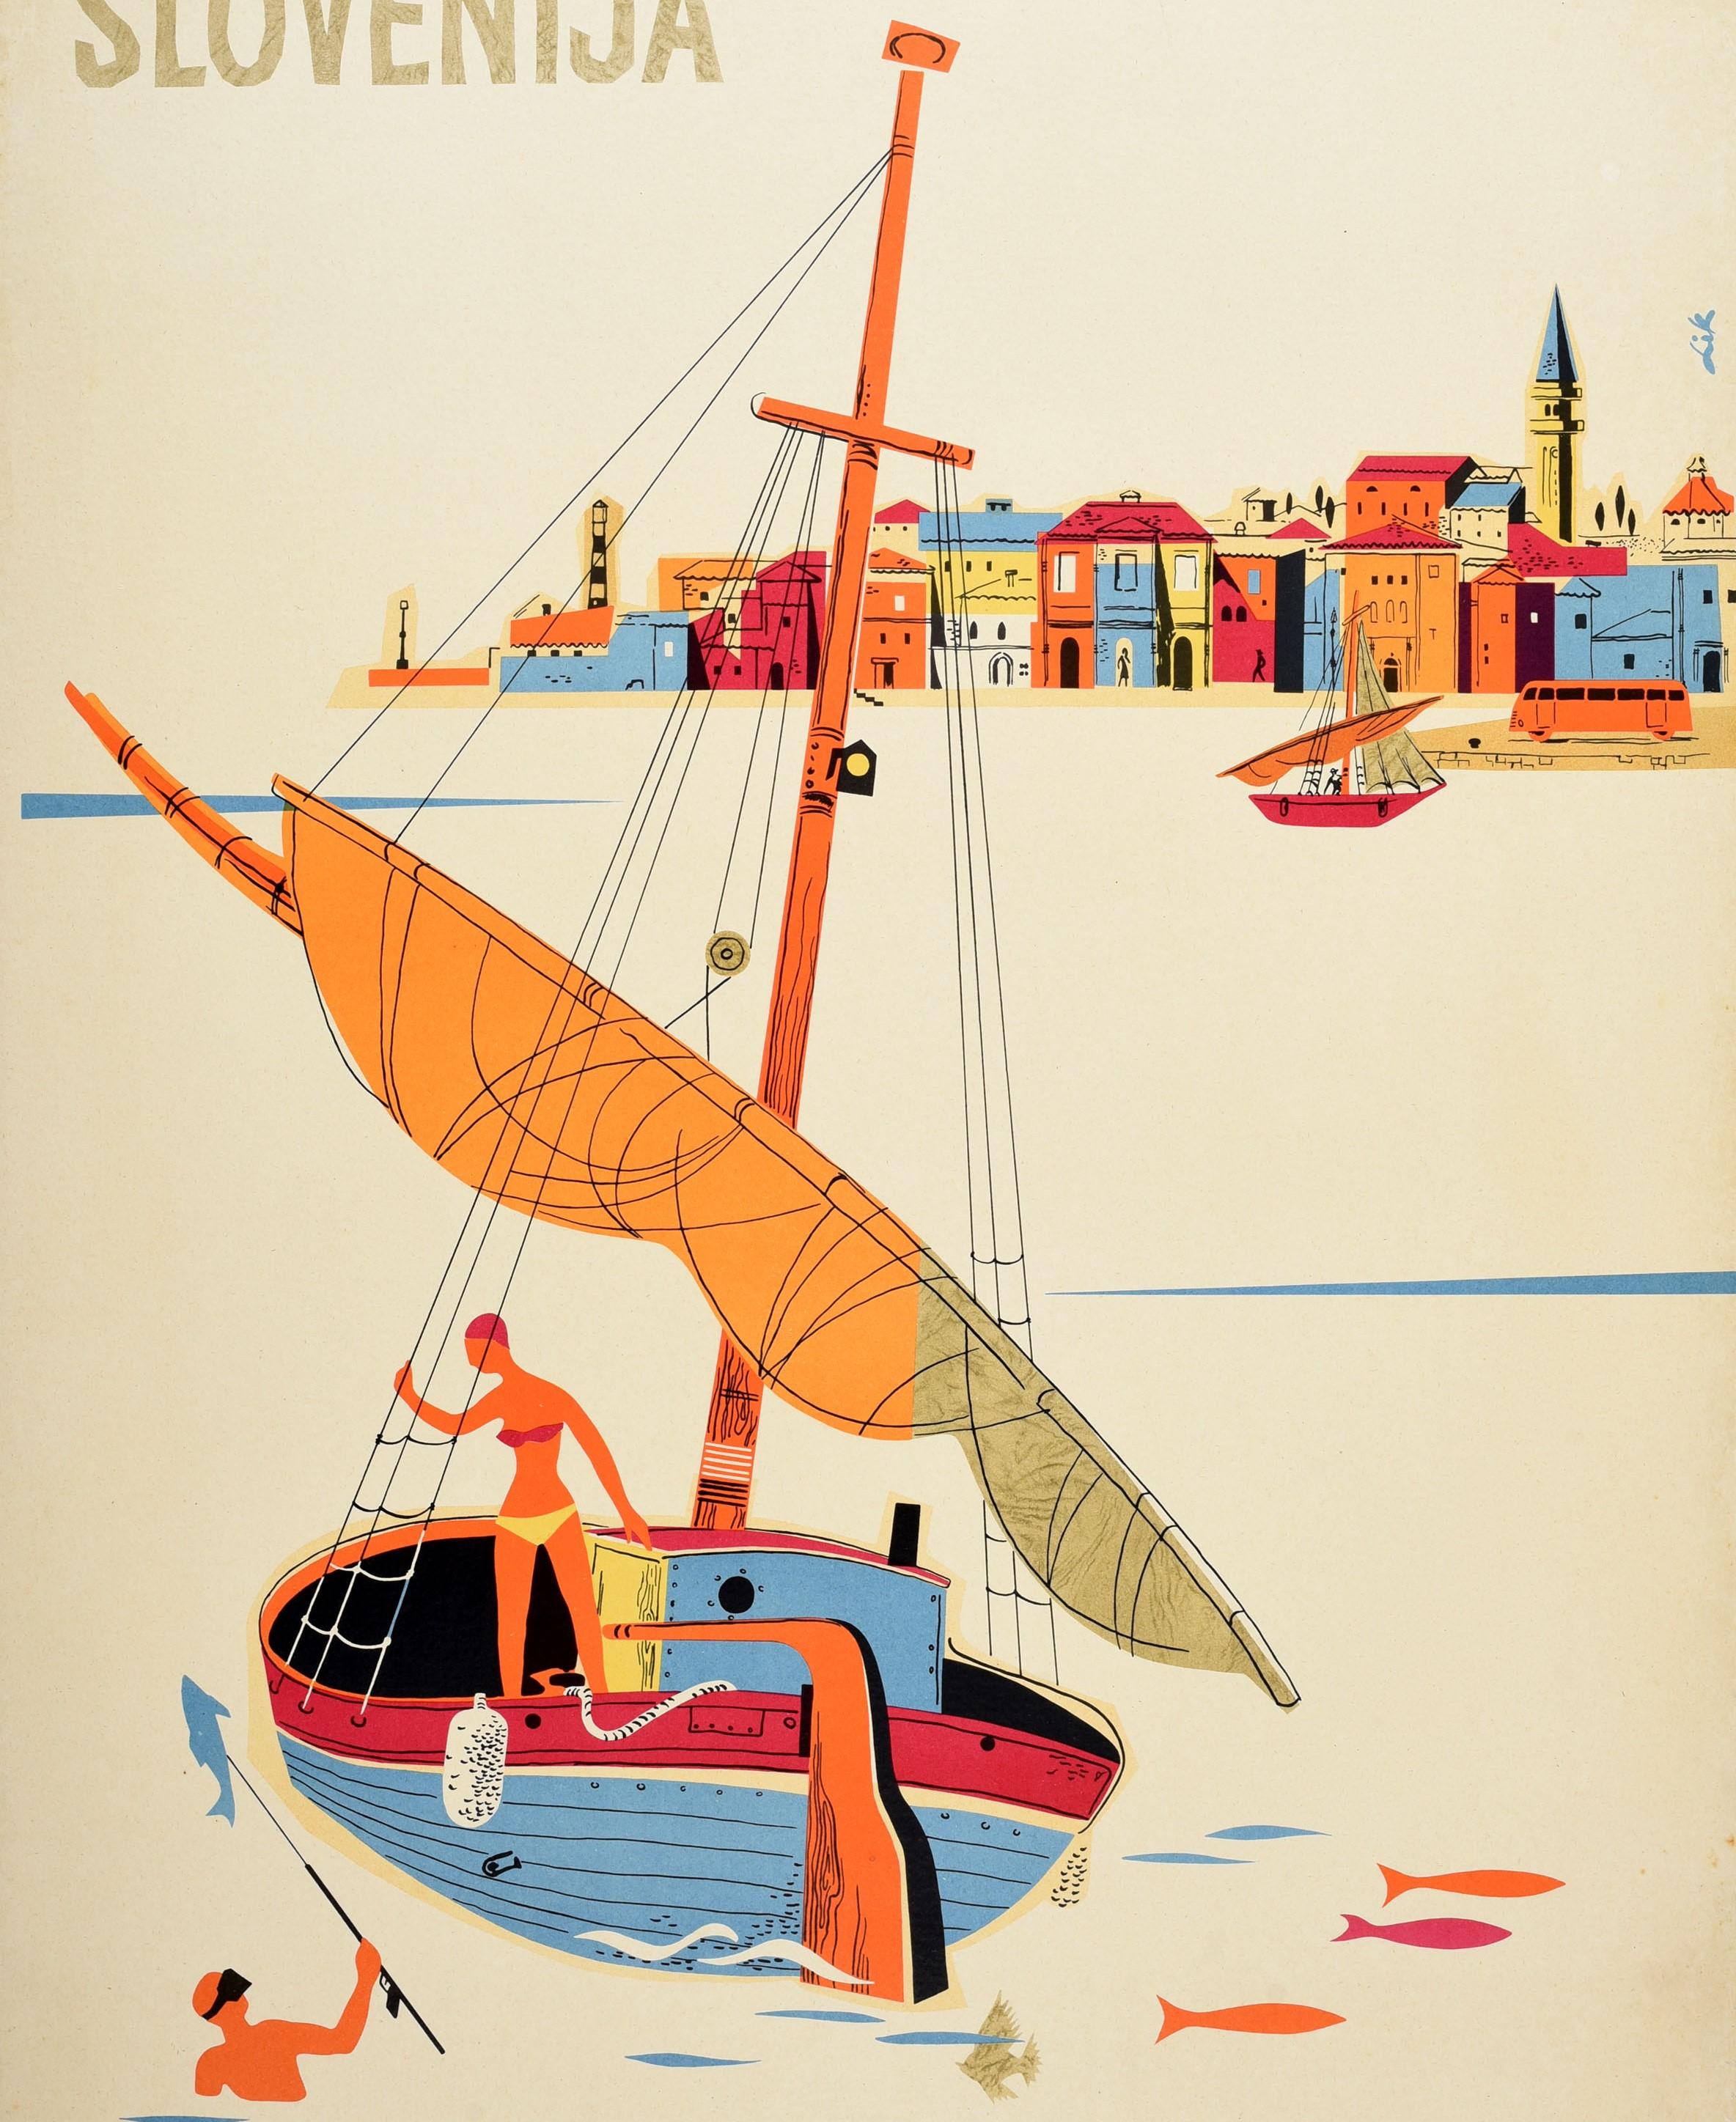 Affiche de voyage originale vintage pour la Slovénie Yougoslavie / Slovenija Jugoslavia présentant une illustration colorée d'une femme en bikini sur un voilier en bois, s'accrochant aux cordes et regardant un homme dans la mer tenant un poisson